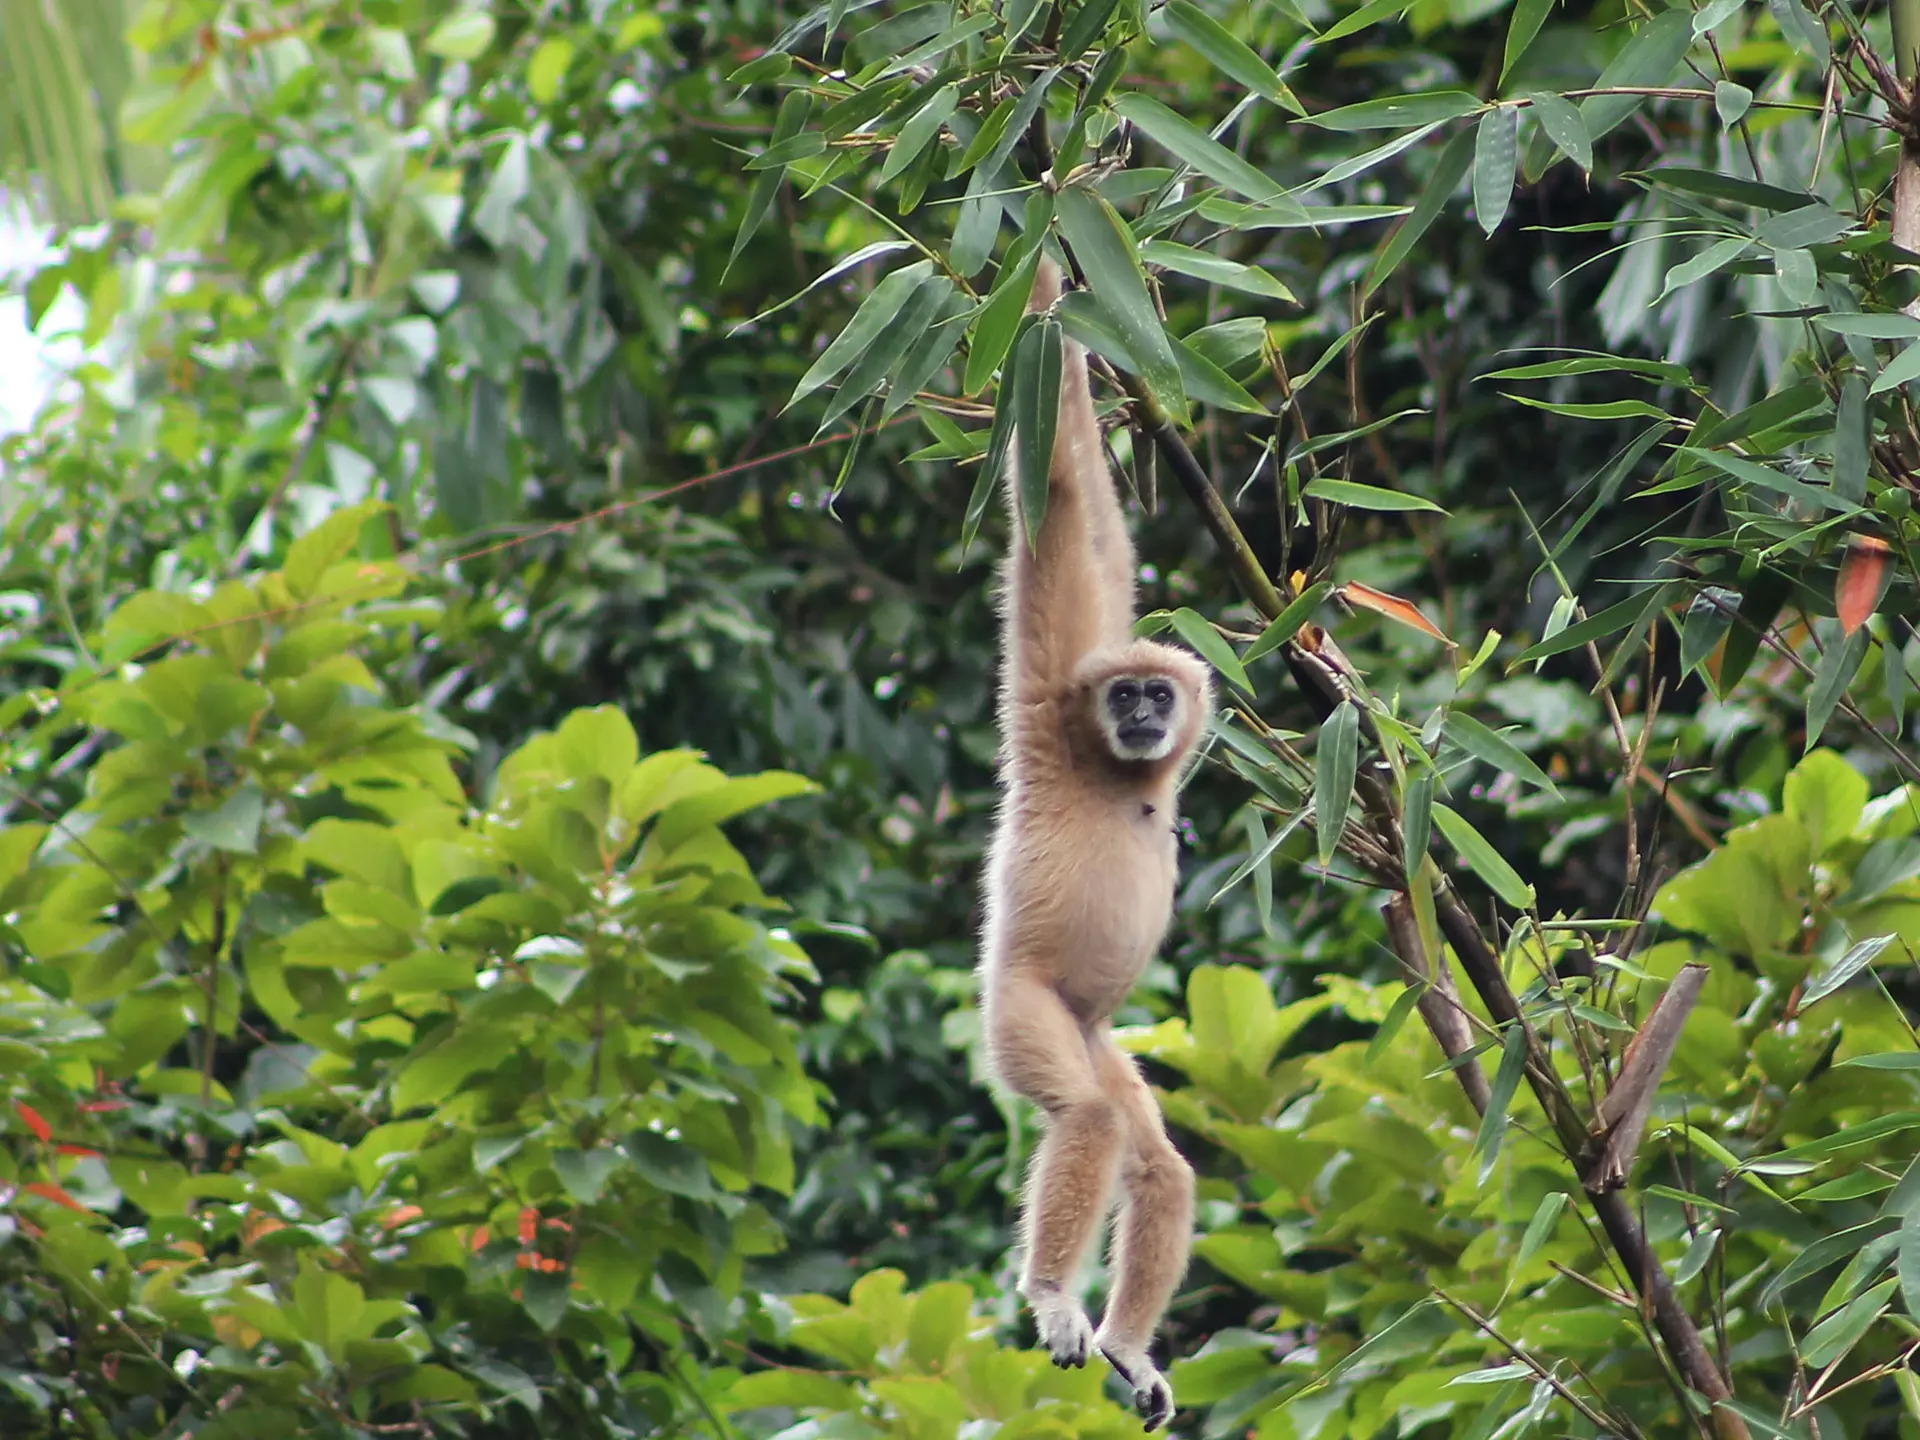 KHAO SOK NATIONALPARK - Det er ikke usædvanligt, at man får gibbonaberne at se. Og om morgenen kan man ofte høre deres karakteristiske kalden, Check Point Travel